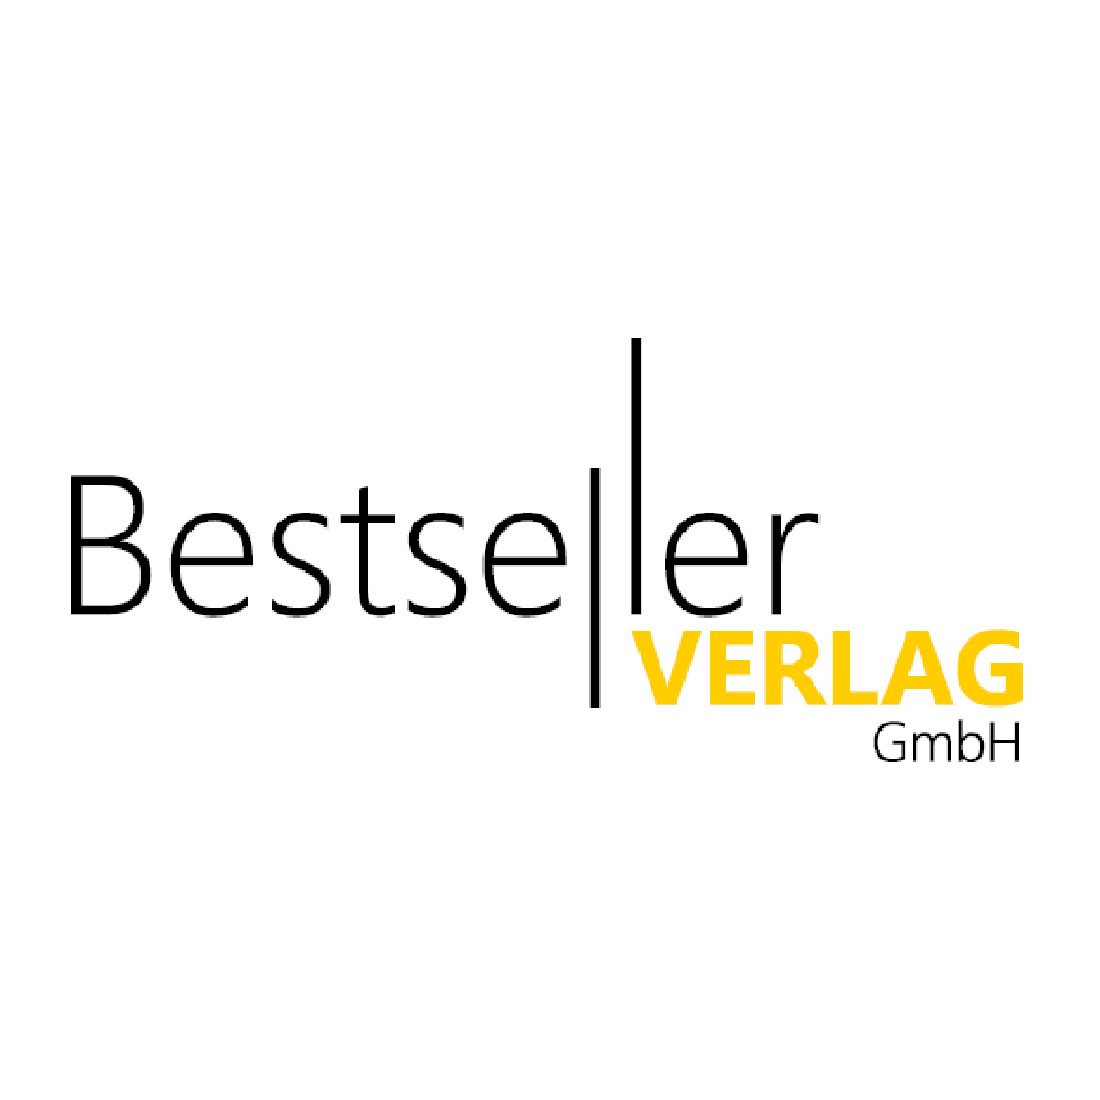 Bestseller Verlag